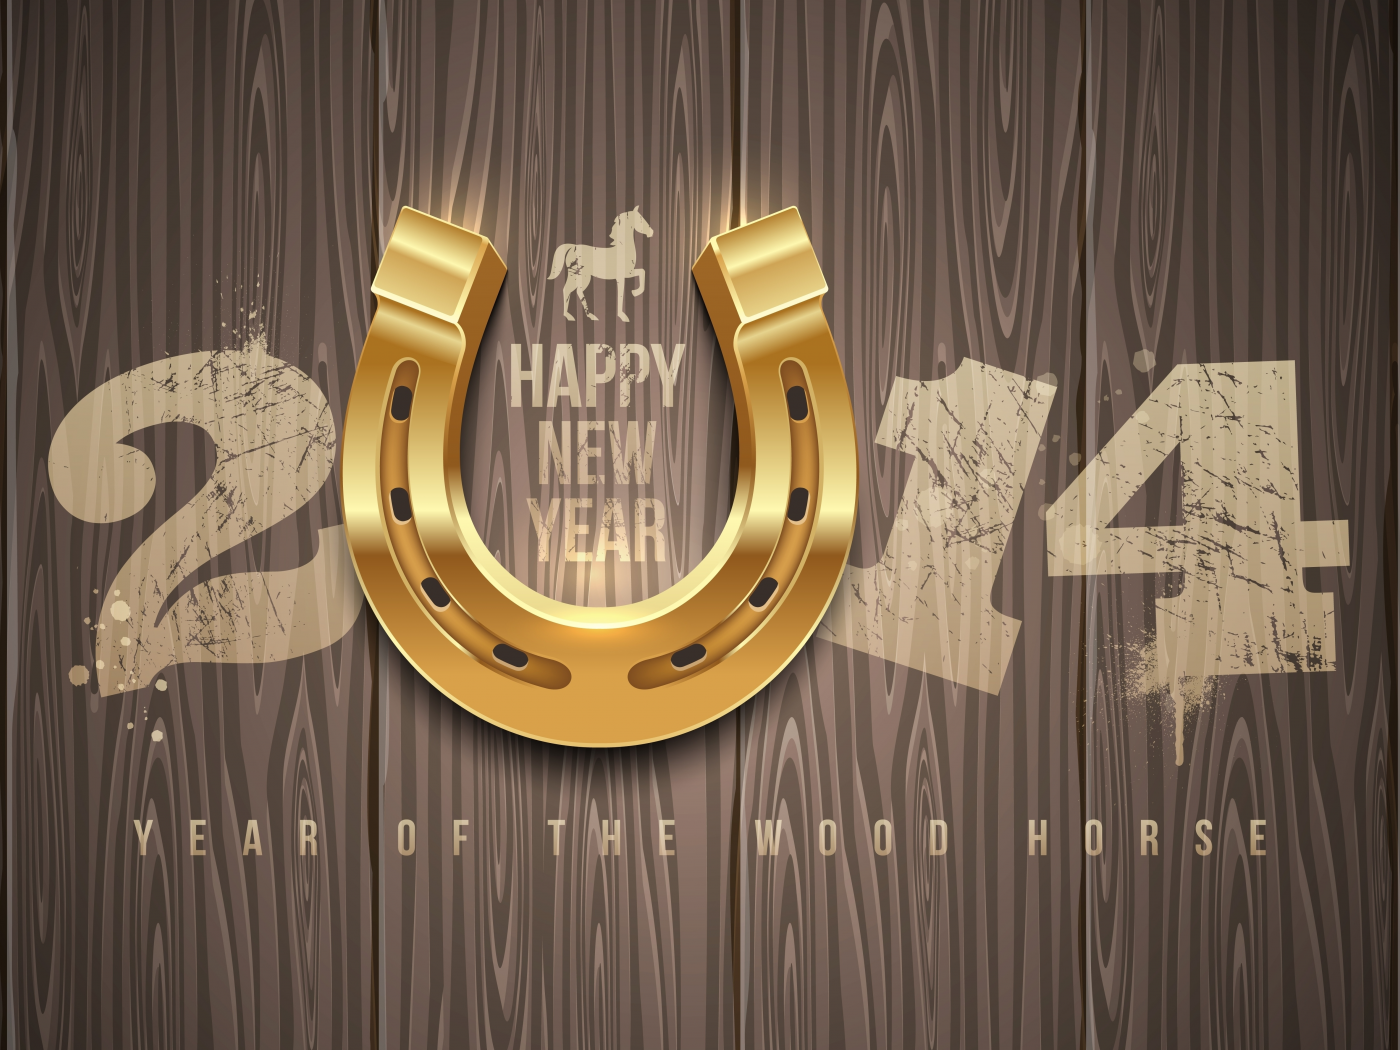 2014 год, happy new year, с новым годом, year of the wood horse, 2014